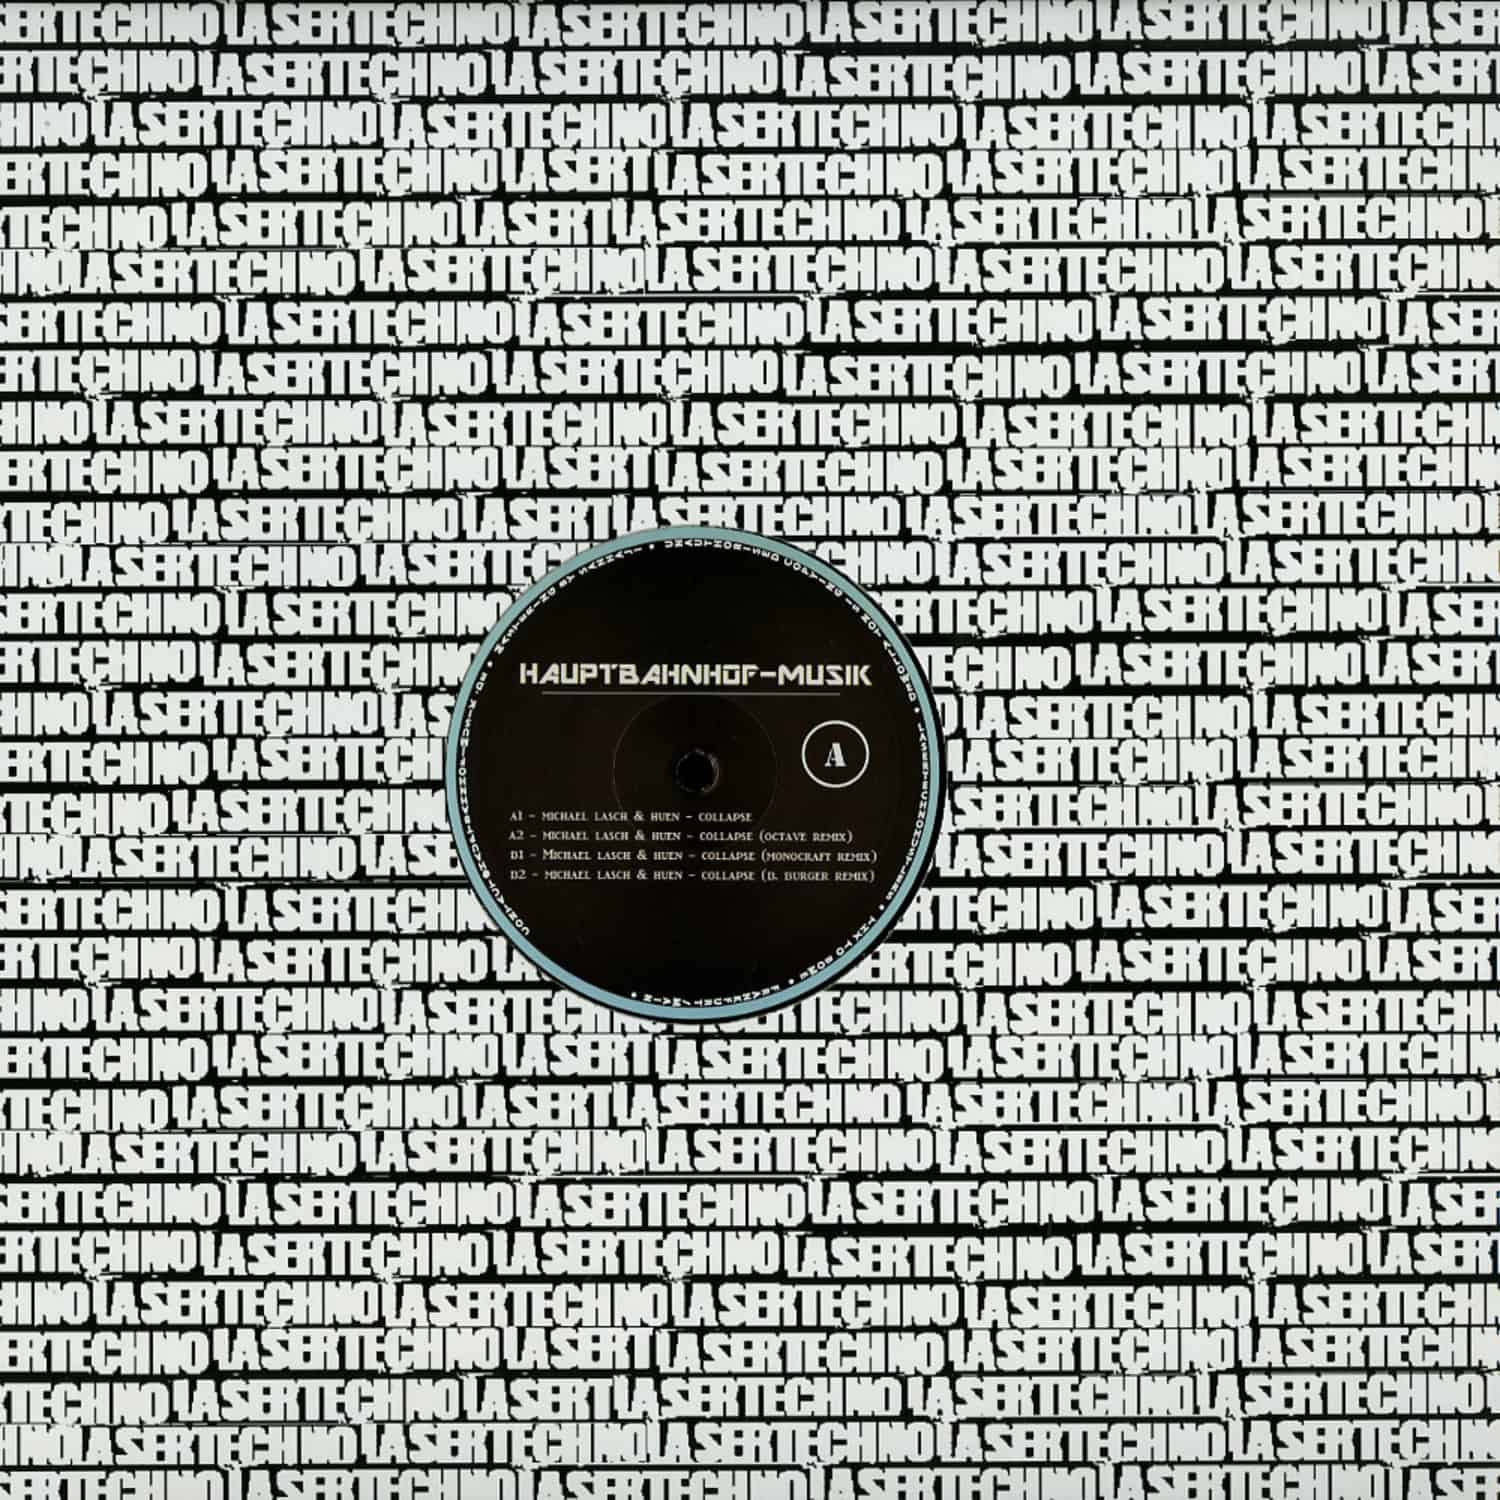 Michael Lasch & Huen - COLLAPSE EP